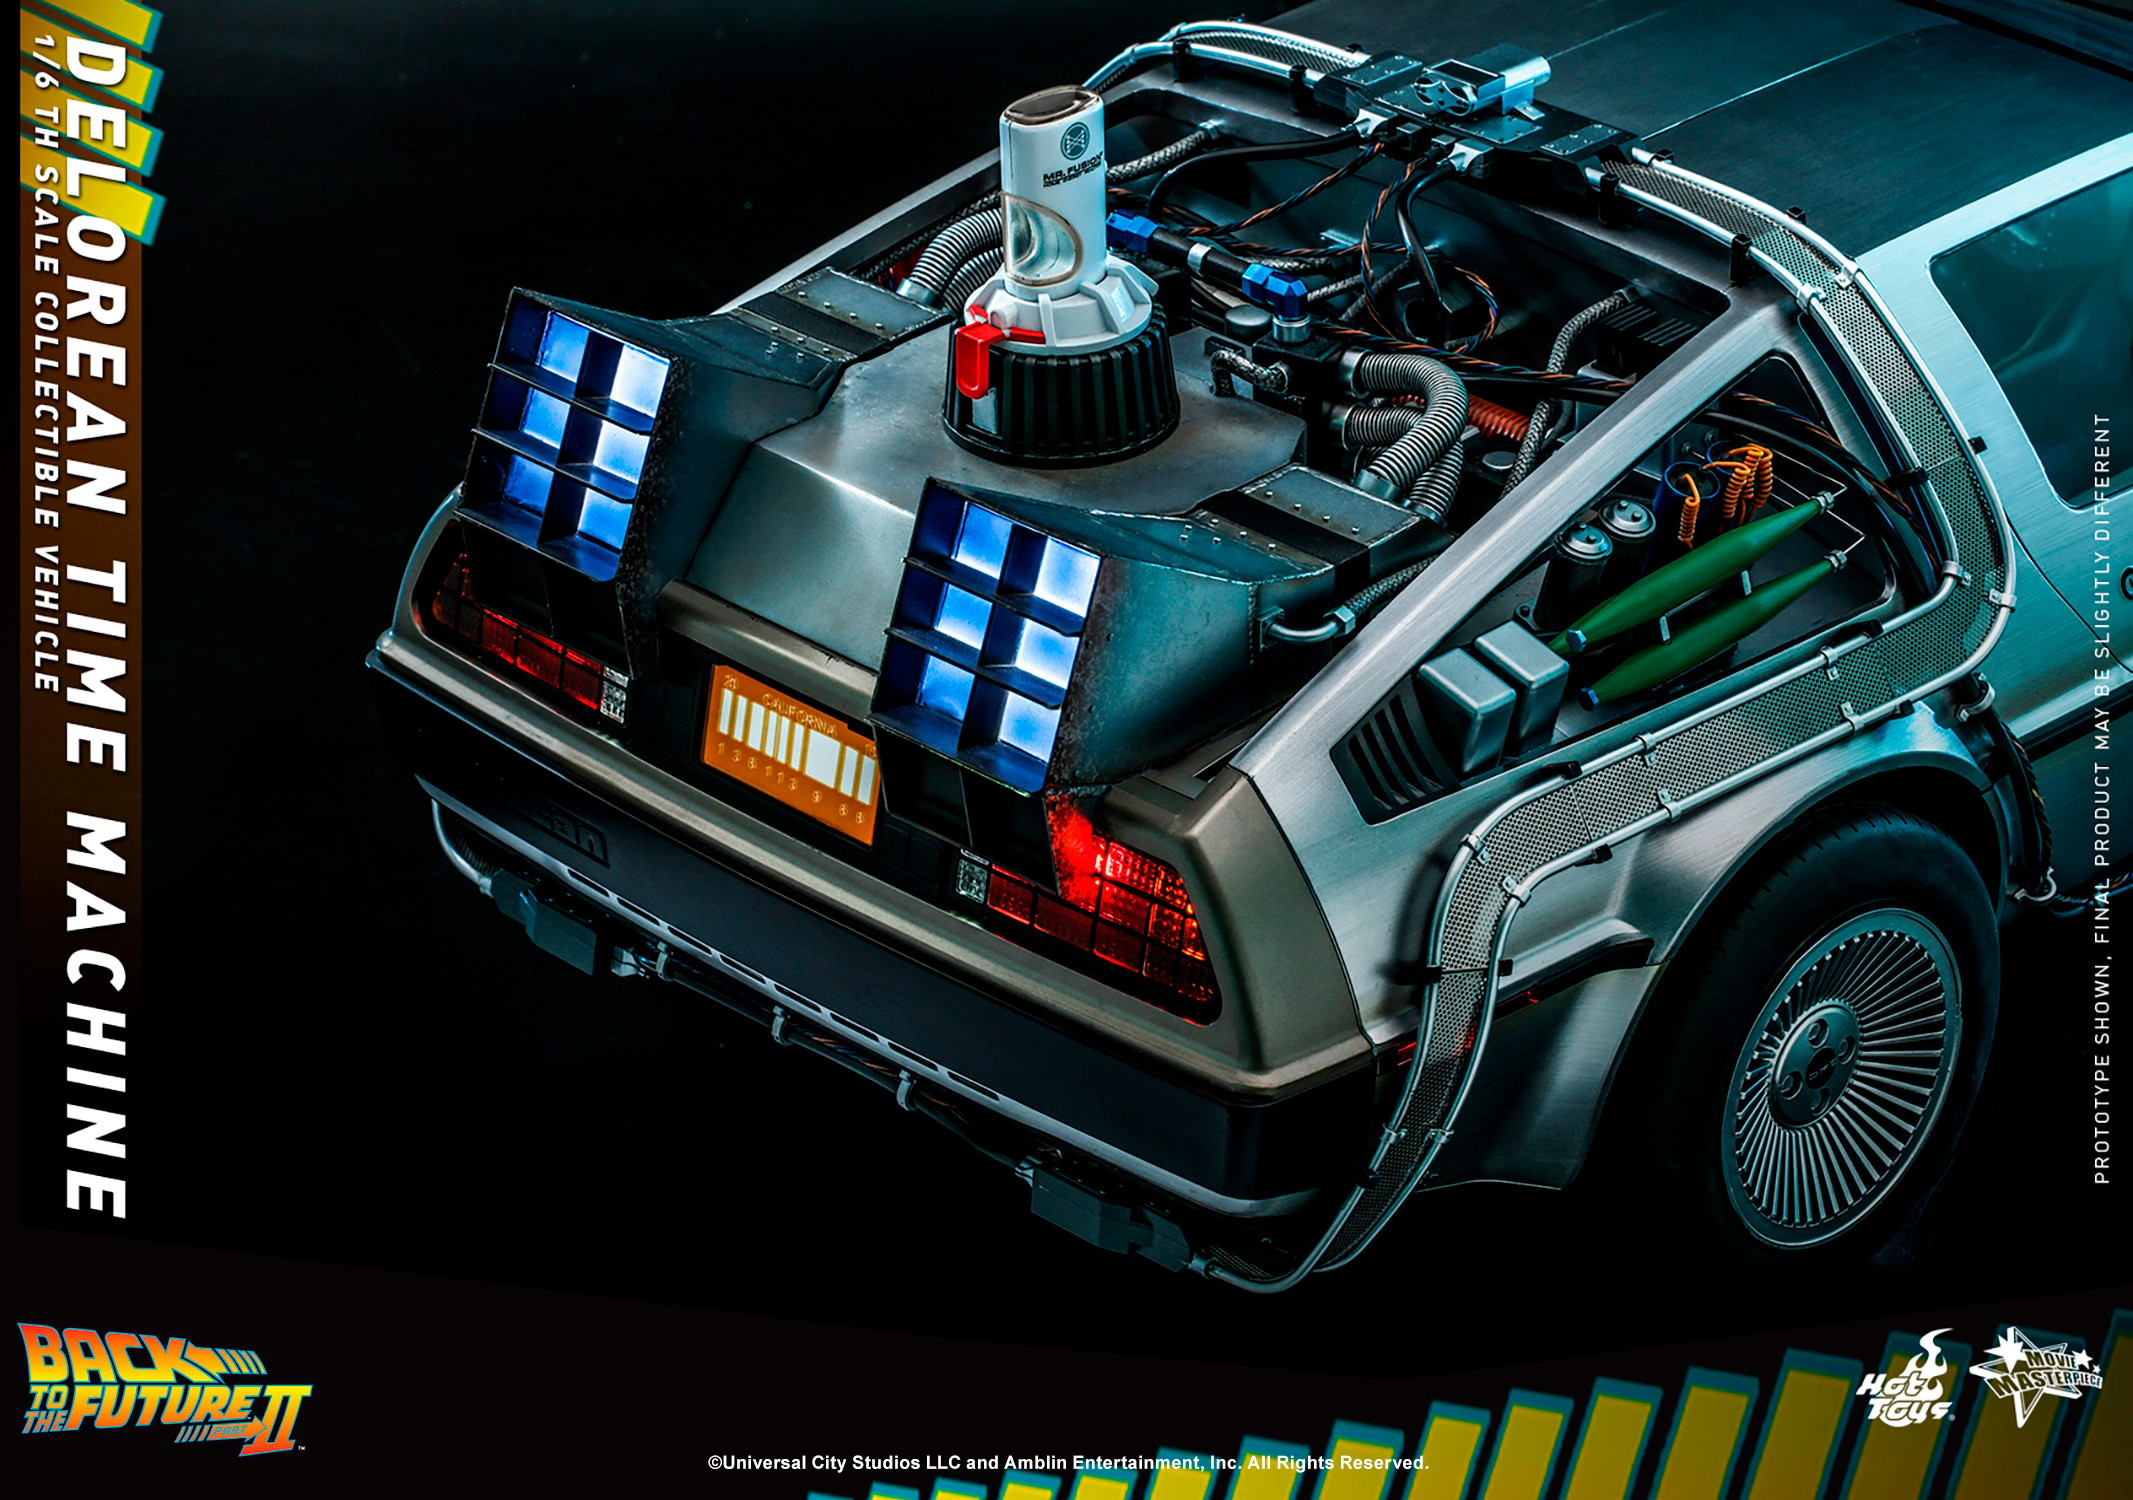 DeLorean Time Machine (Prototype Shown) View 6